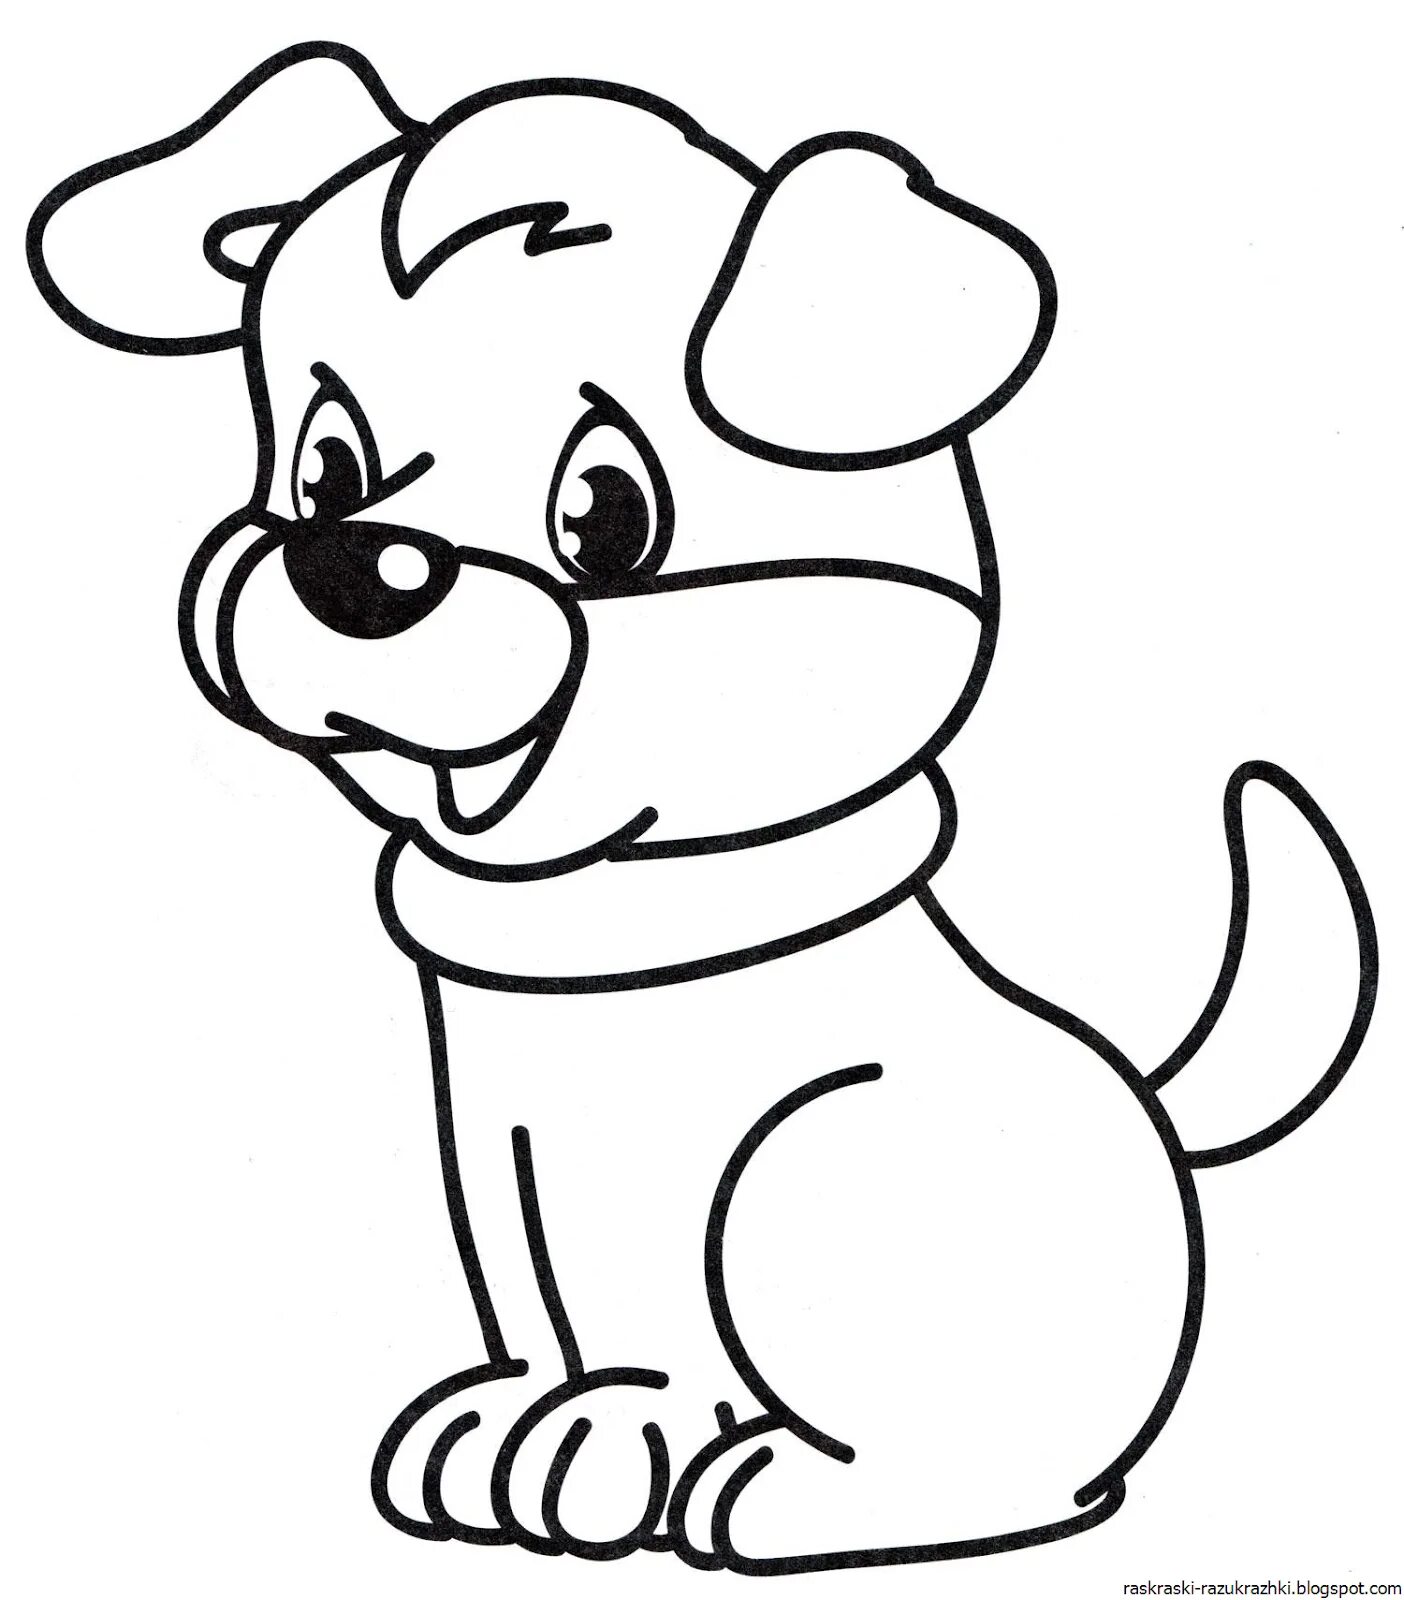 Собачка раскраска для детей распечатать раскраски. Собачка раскраска для детей. Собака раскраска для детей. Раскраска малышам «собачка». Собачка для раскрашивания детям.